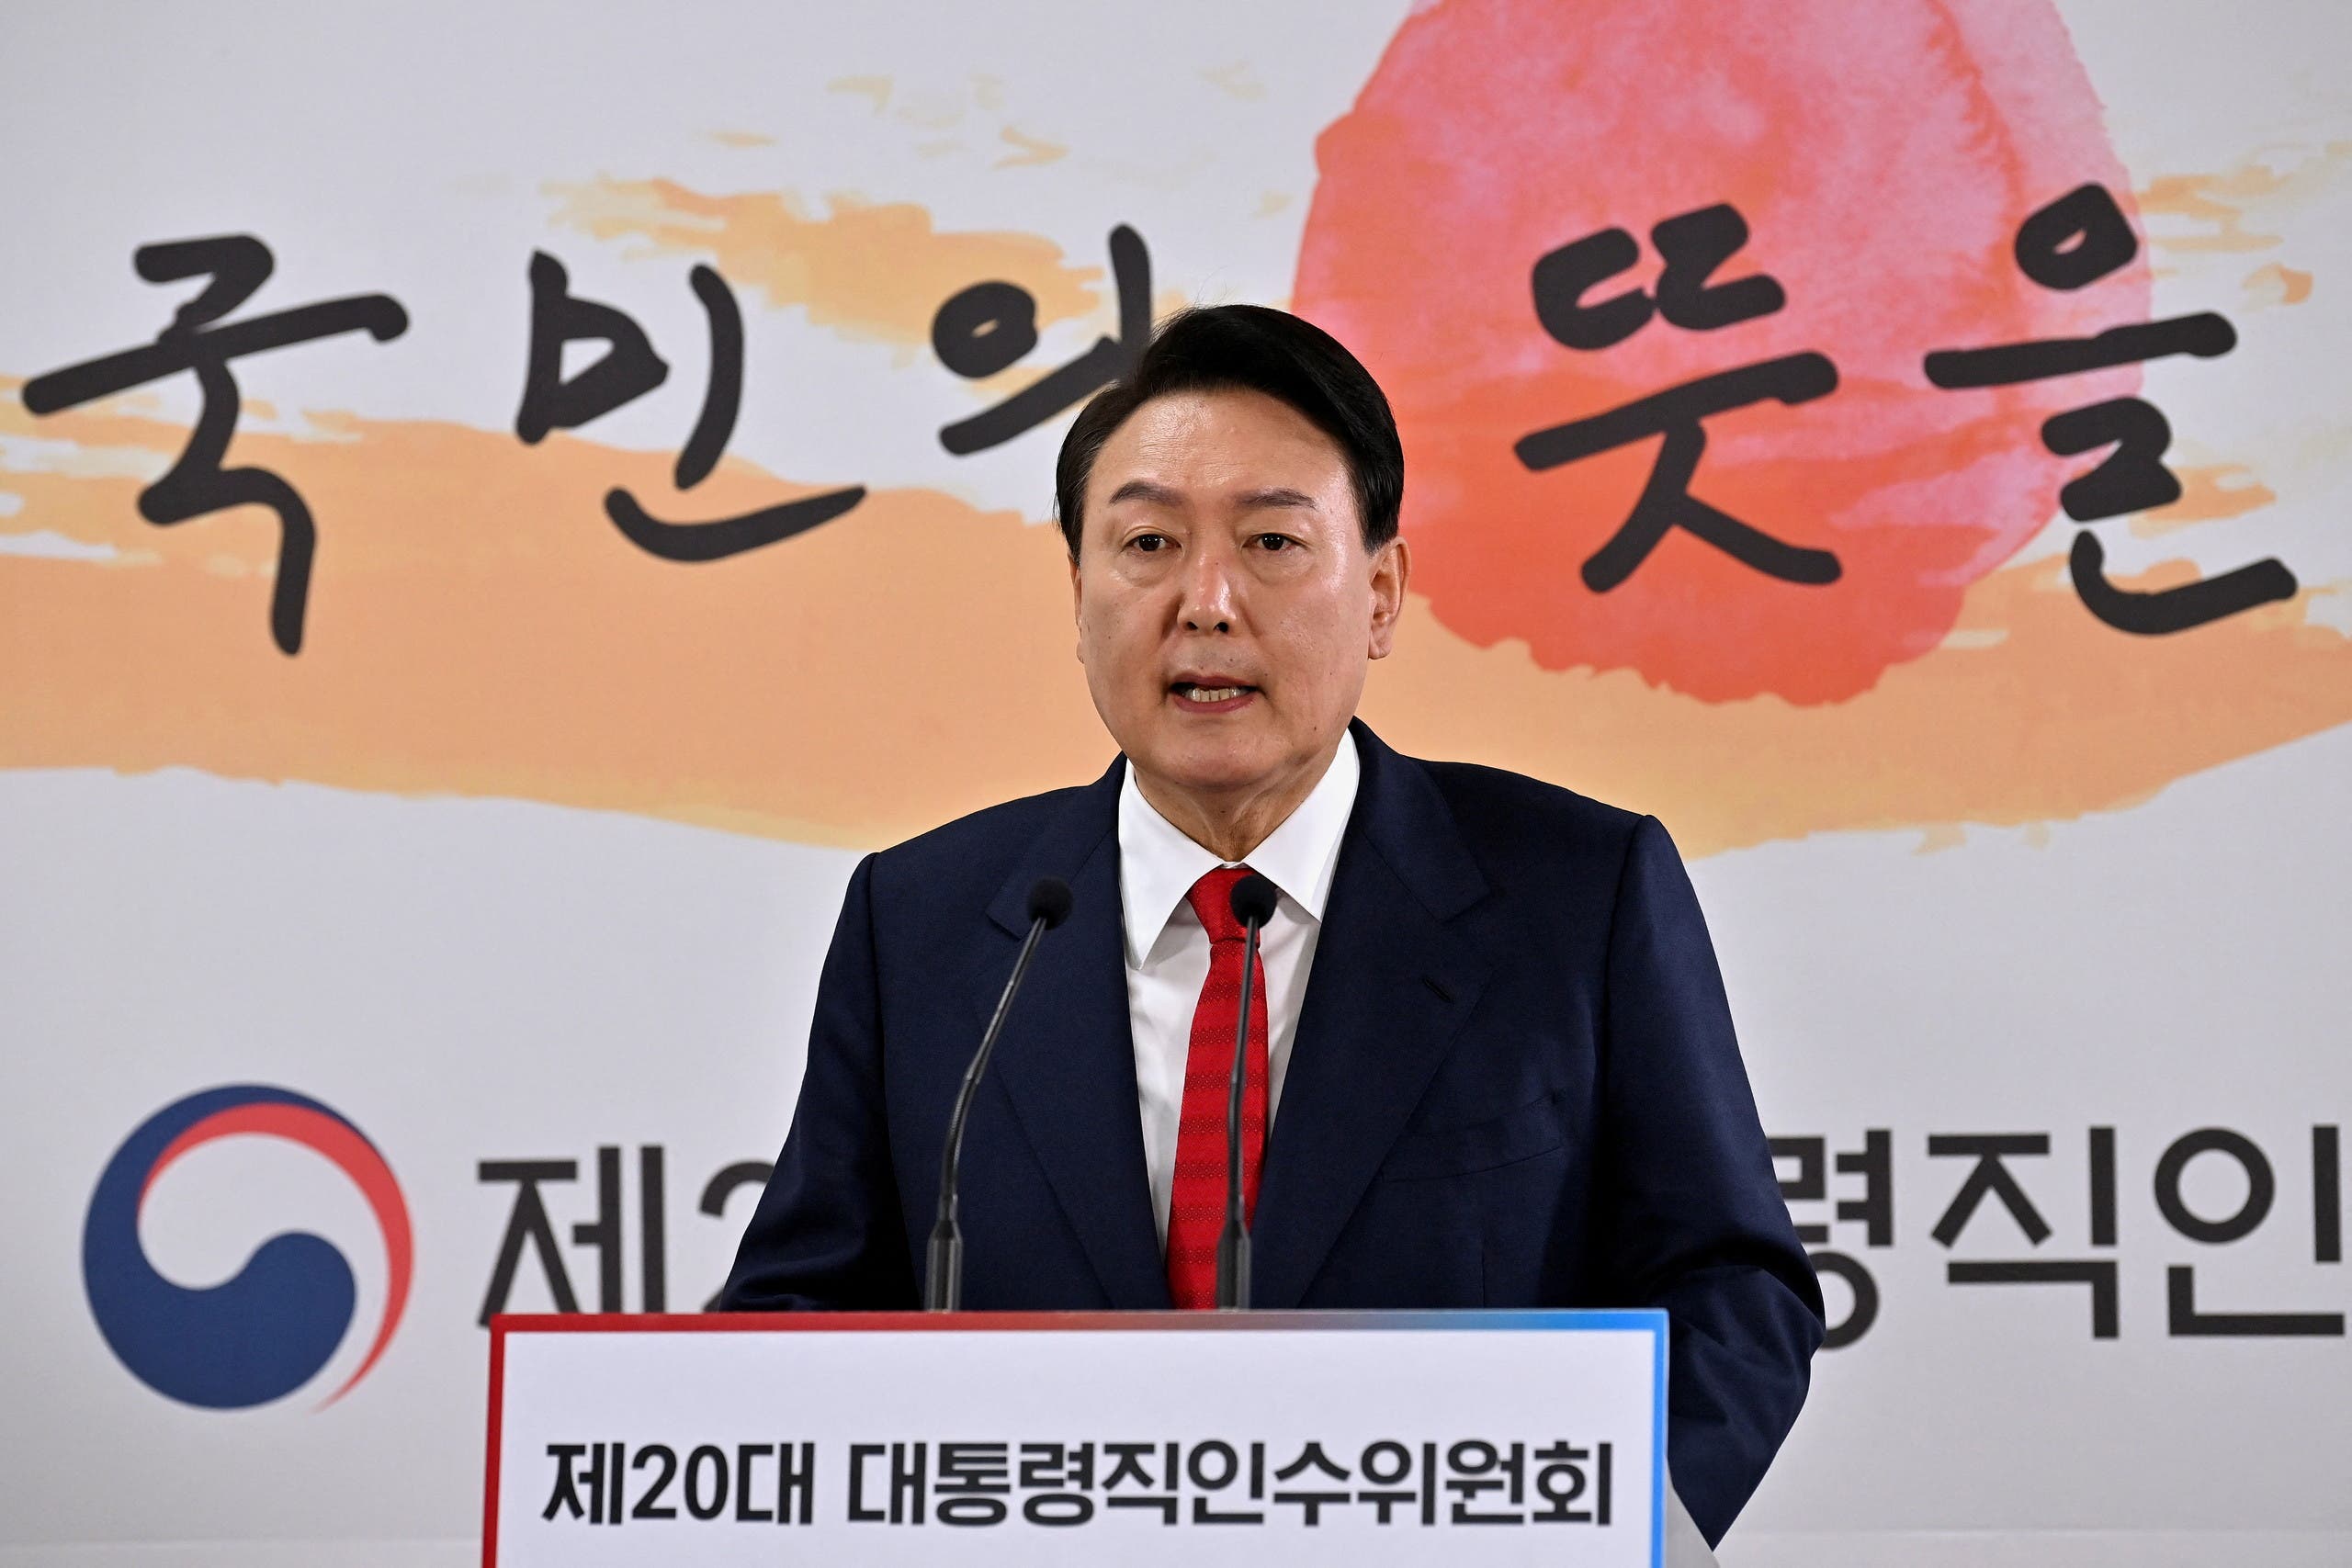  رئيس كوريا الجنوبية الجديد يون سوك يول خلال مؤتمره الصحافي اليوم